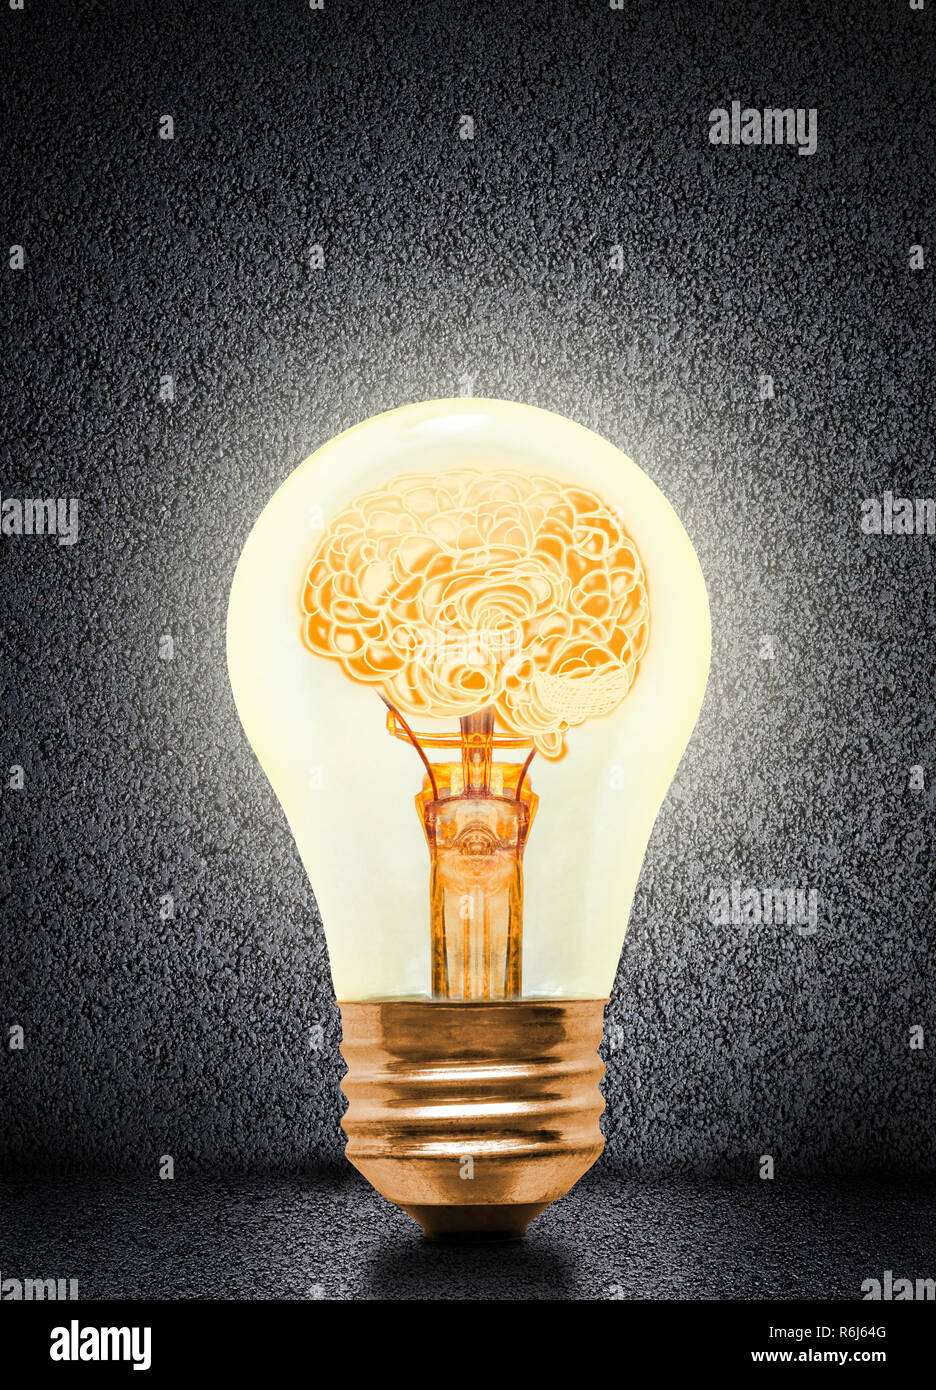 Anatomia di un cervello umano incandescente all'interno di luce accesa la lampada con sfondo concreto e copia di spazio. Concetto di idea brillante, brainstorming, intelli Foto Stock